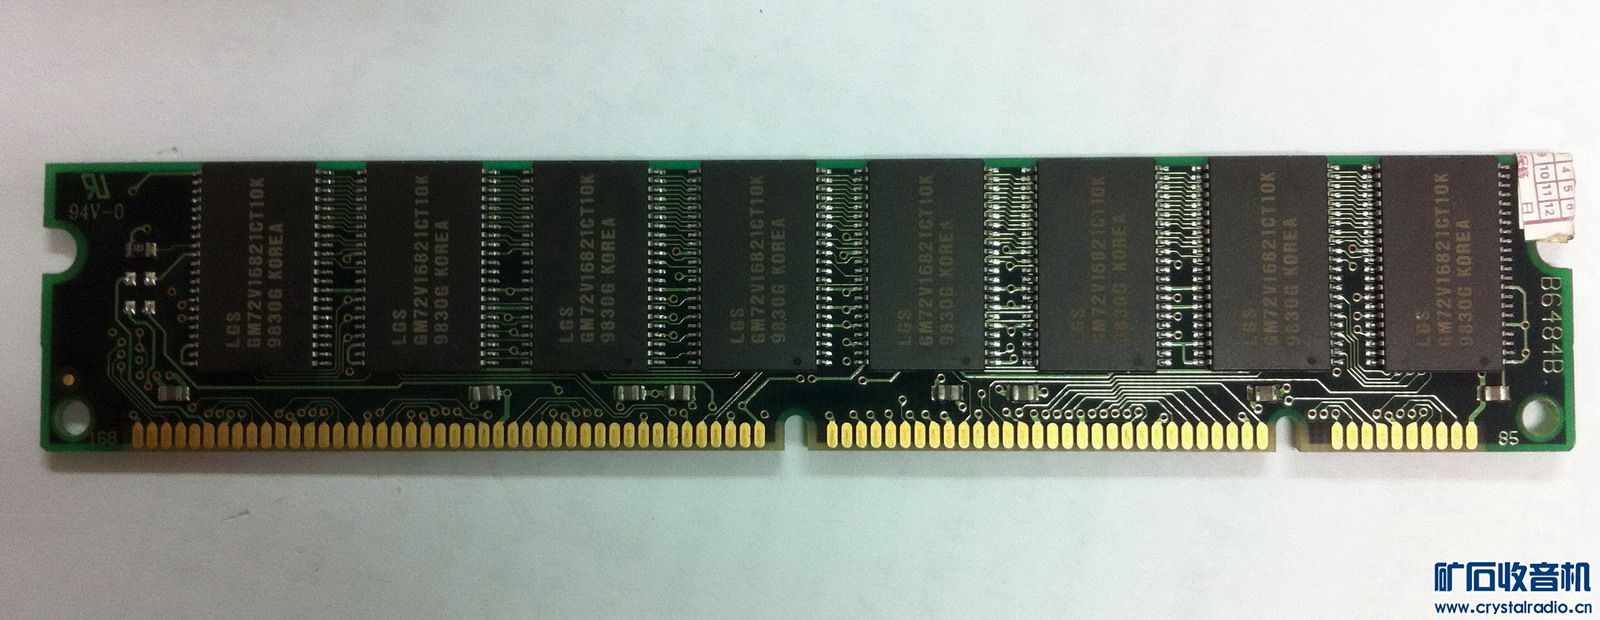 笔记本的,台式机的,DDR的,SDRAM的 - 〓